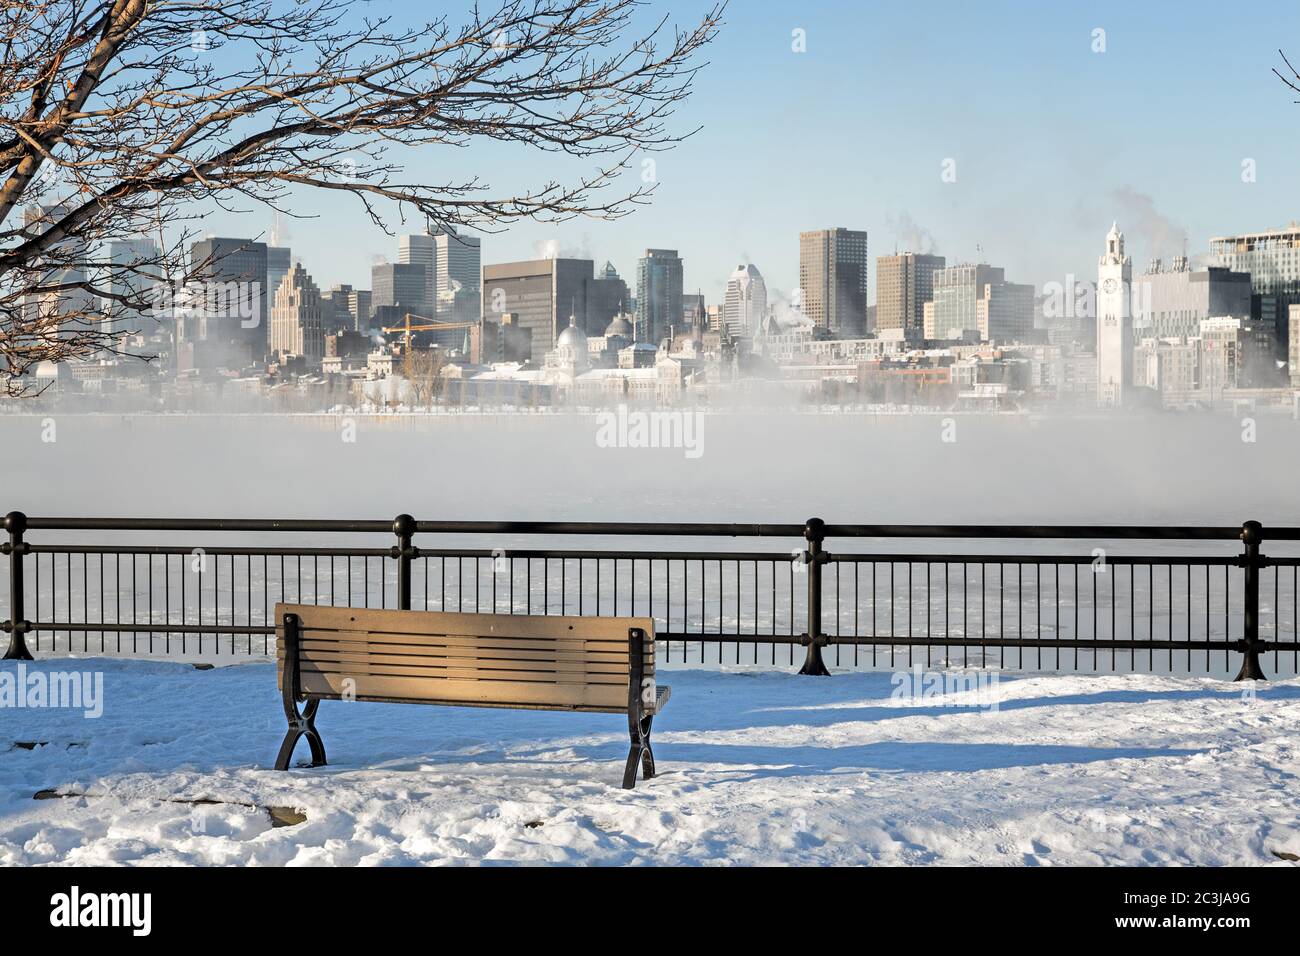 Blick über den St. Lawrence River bis ins Zentrum von Montreal. Winter mit Schnee auf dem Boden und Nebel steigt aus dem gefrorenen Wasser. Stockfoto